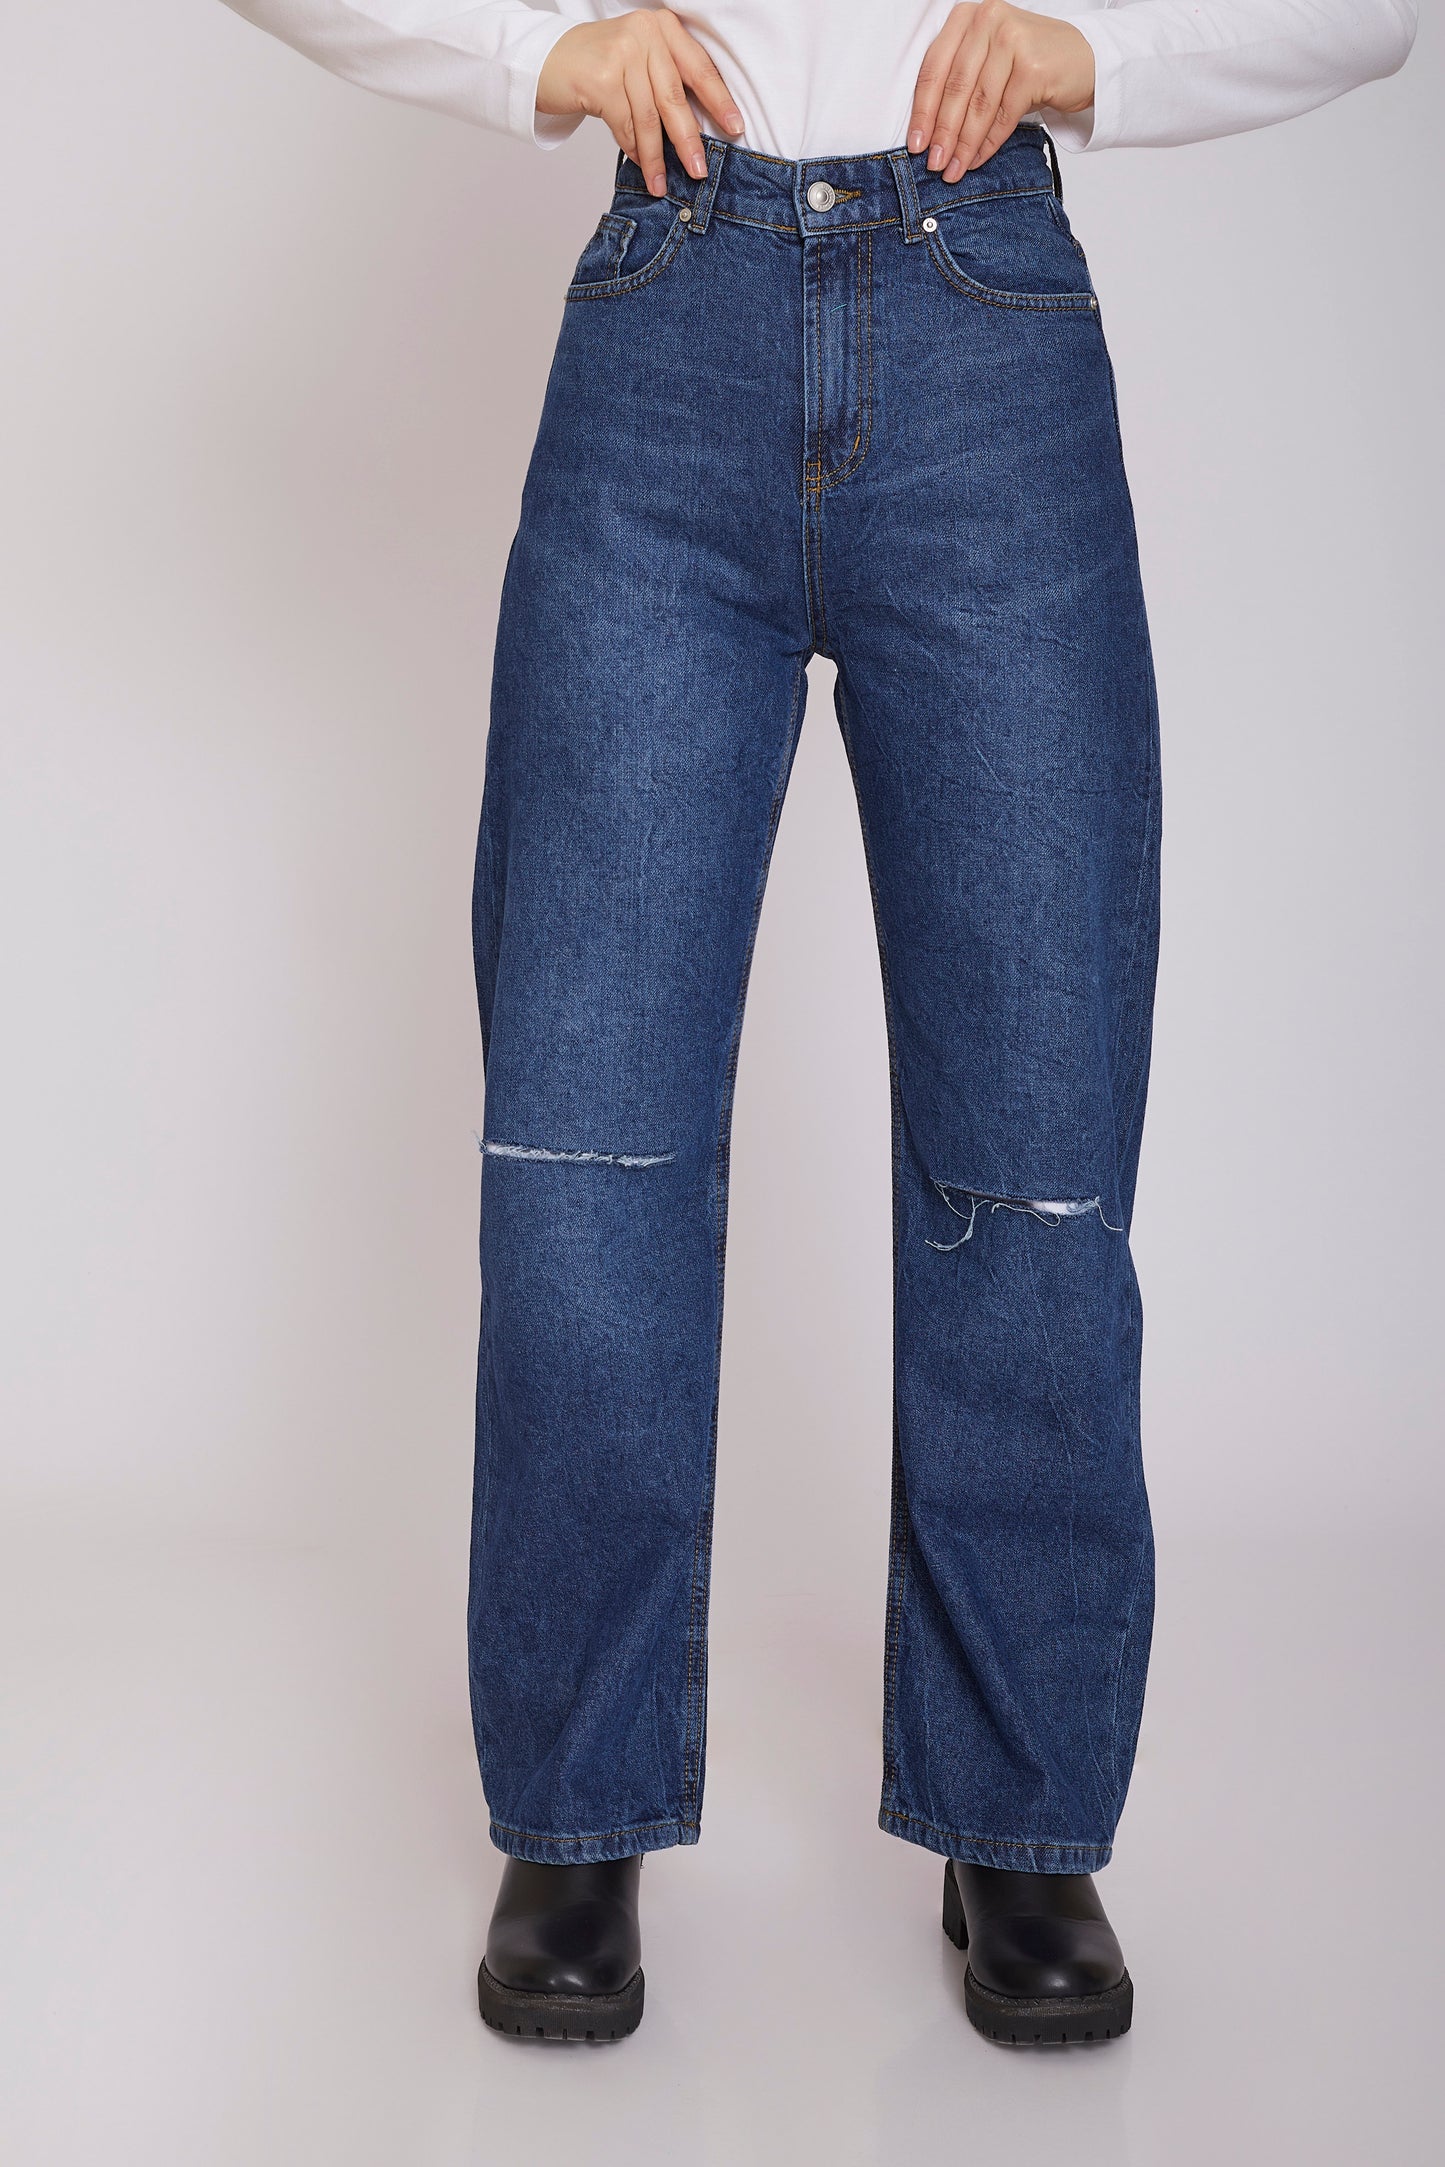 dj wide-leg ripped jeans - dark blue